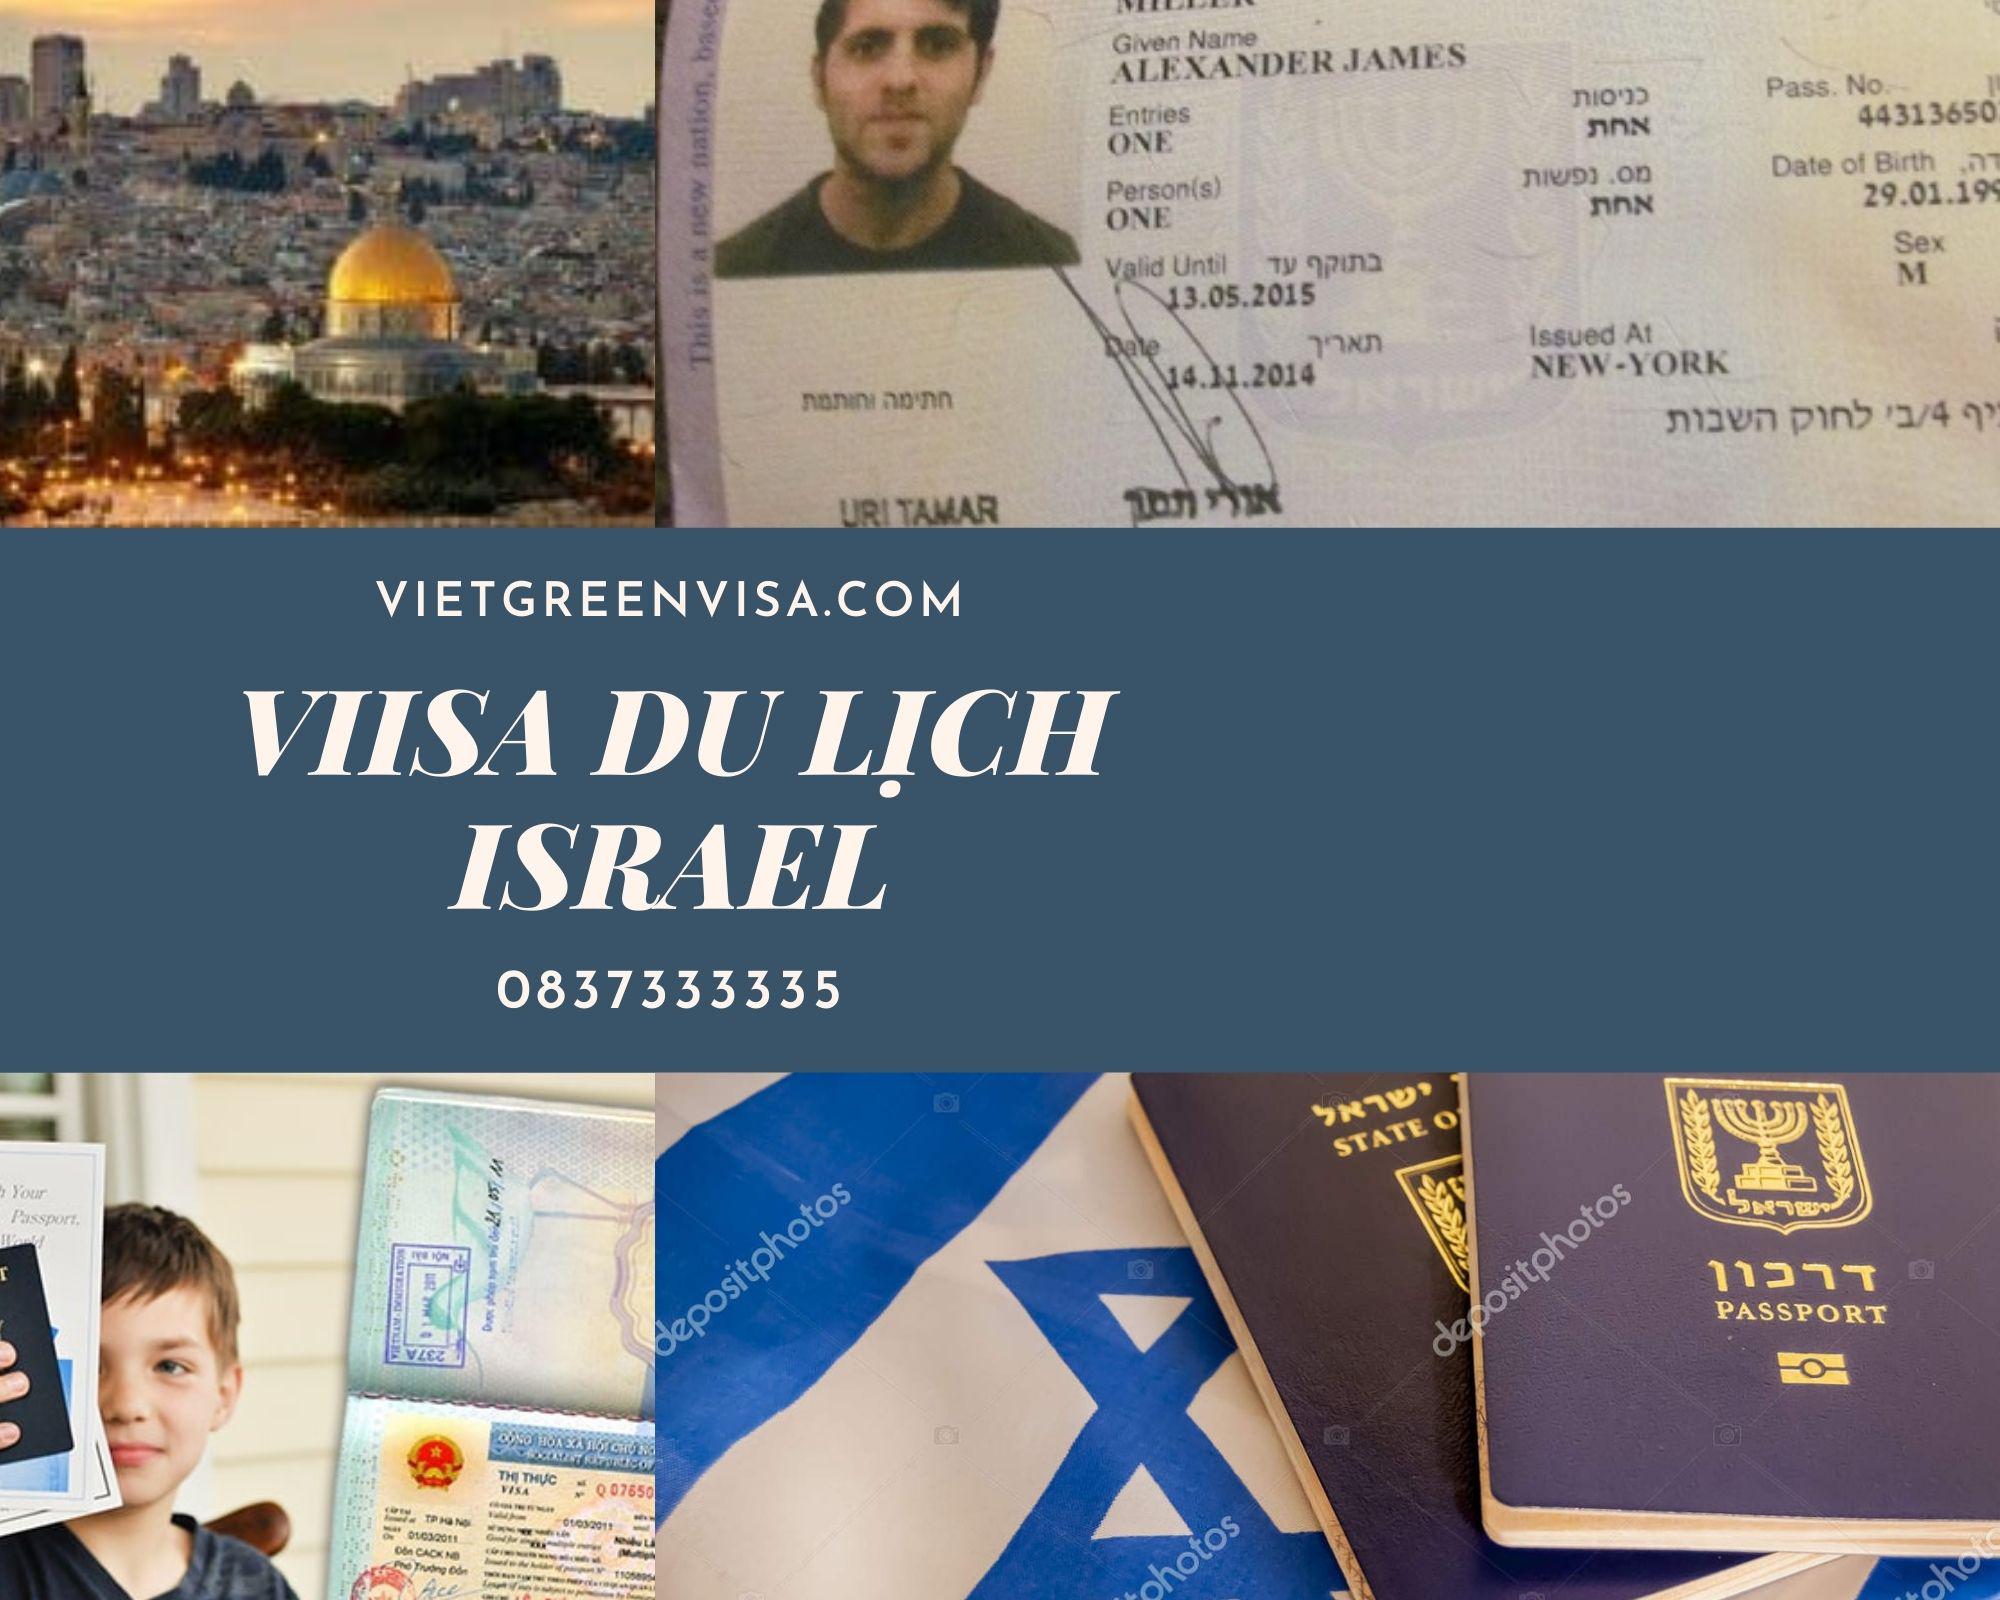 Dịch vụ làm visa Israel du lịch 14 ngày - Bao đậu